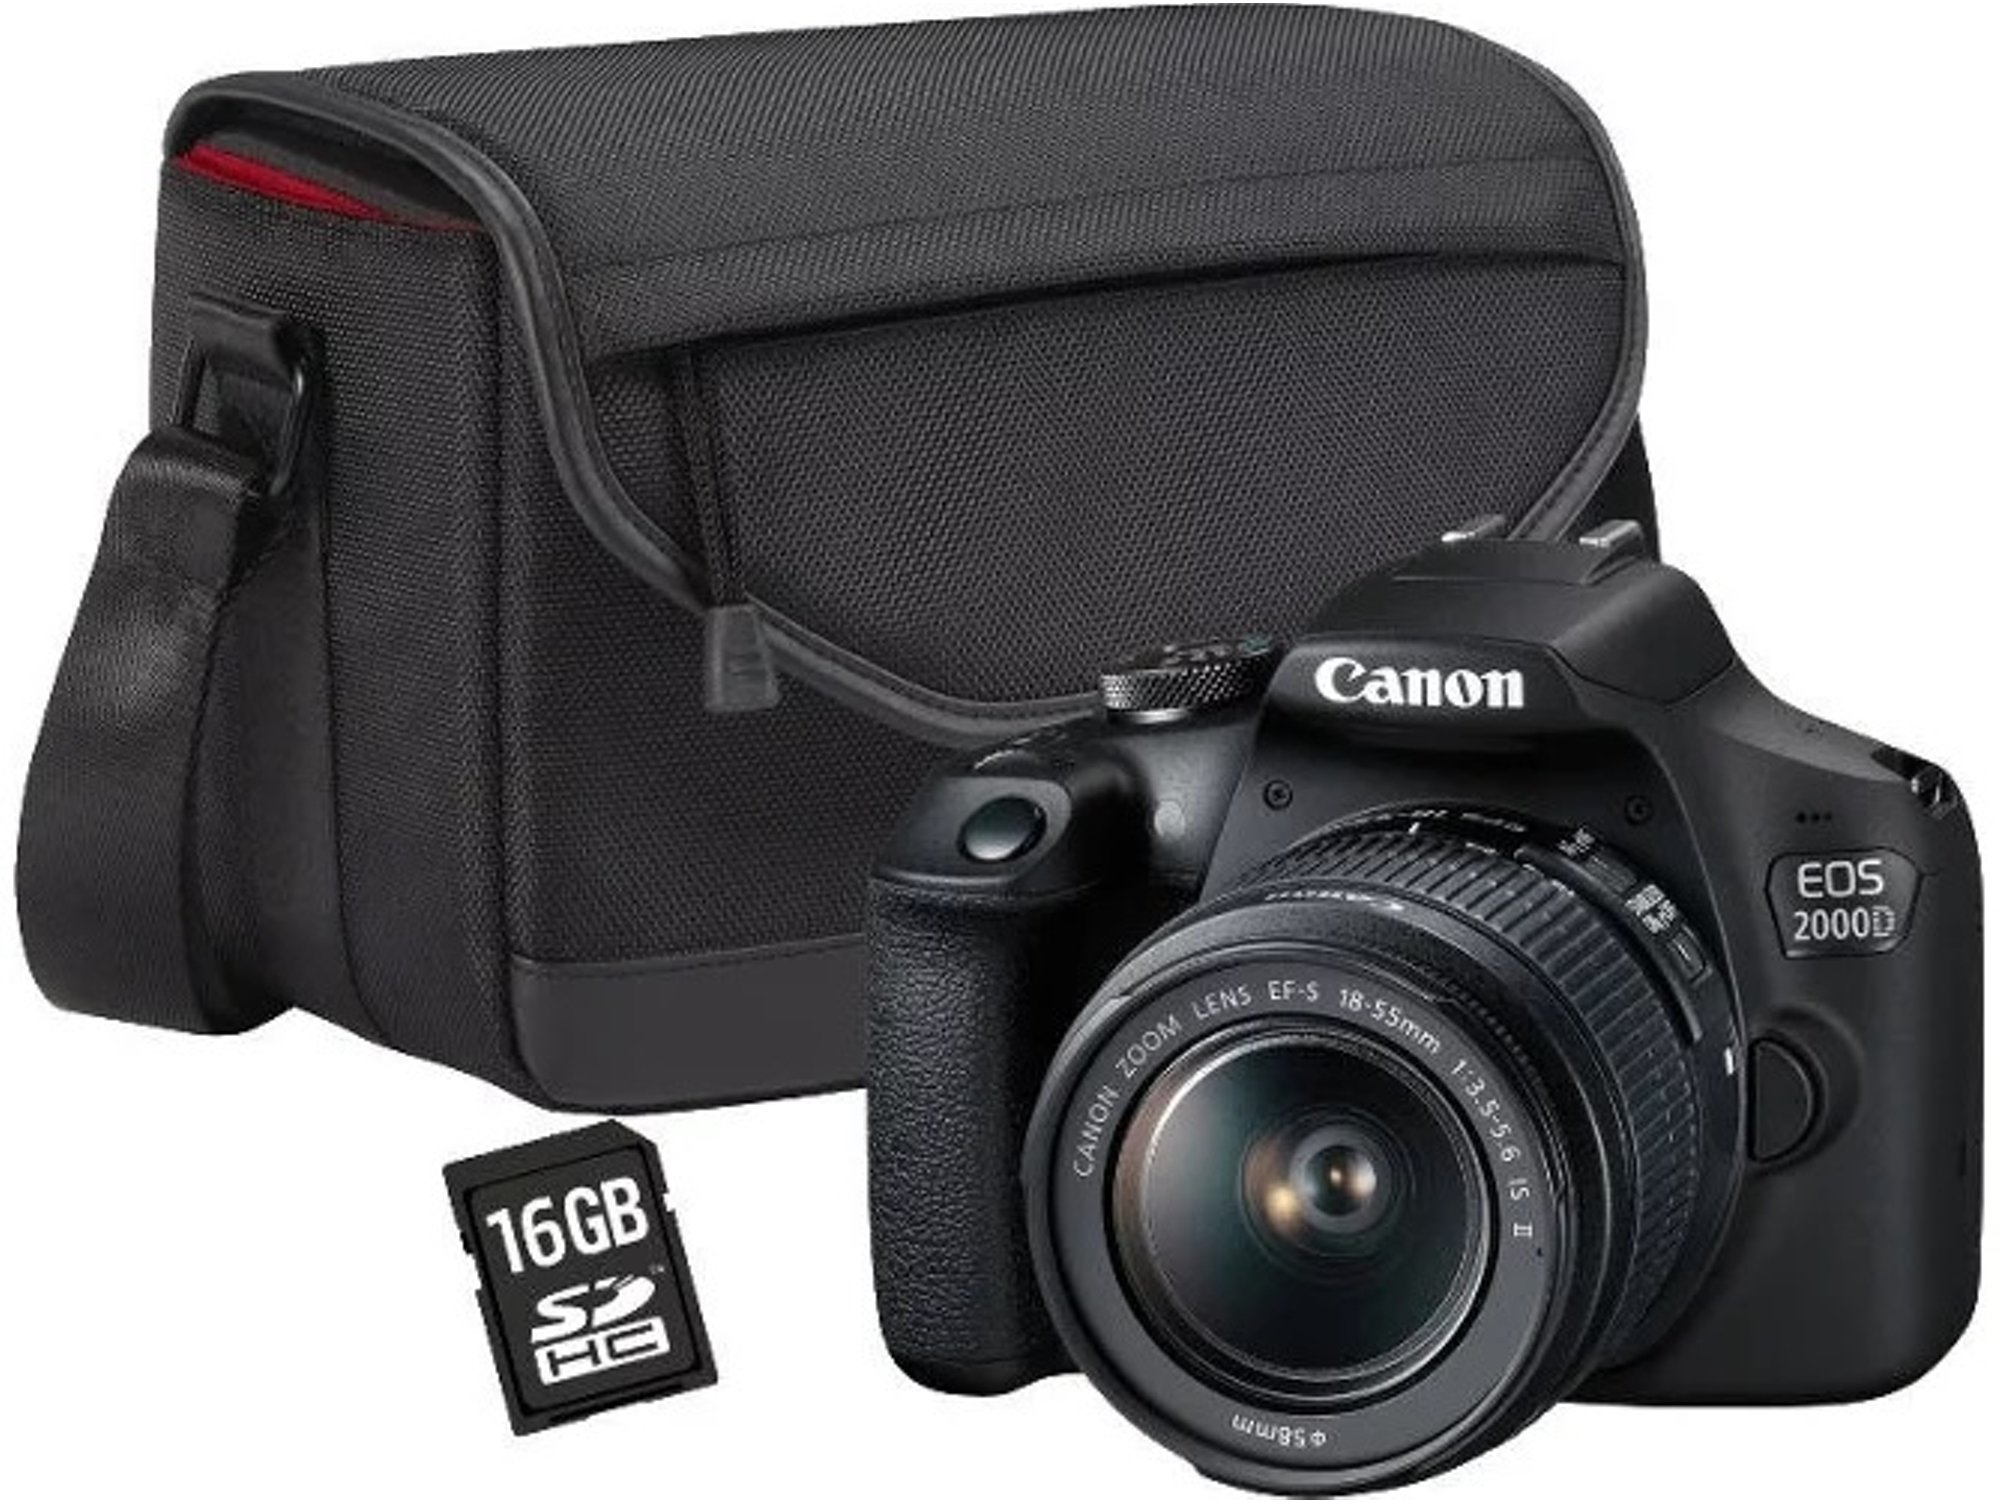 Camara Reflex Canon Kit Eos 2000d con Ofertas en Carrefour